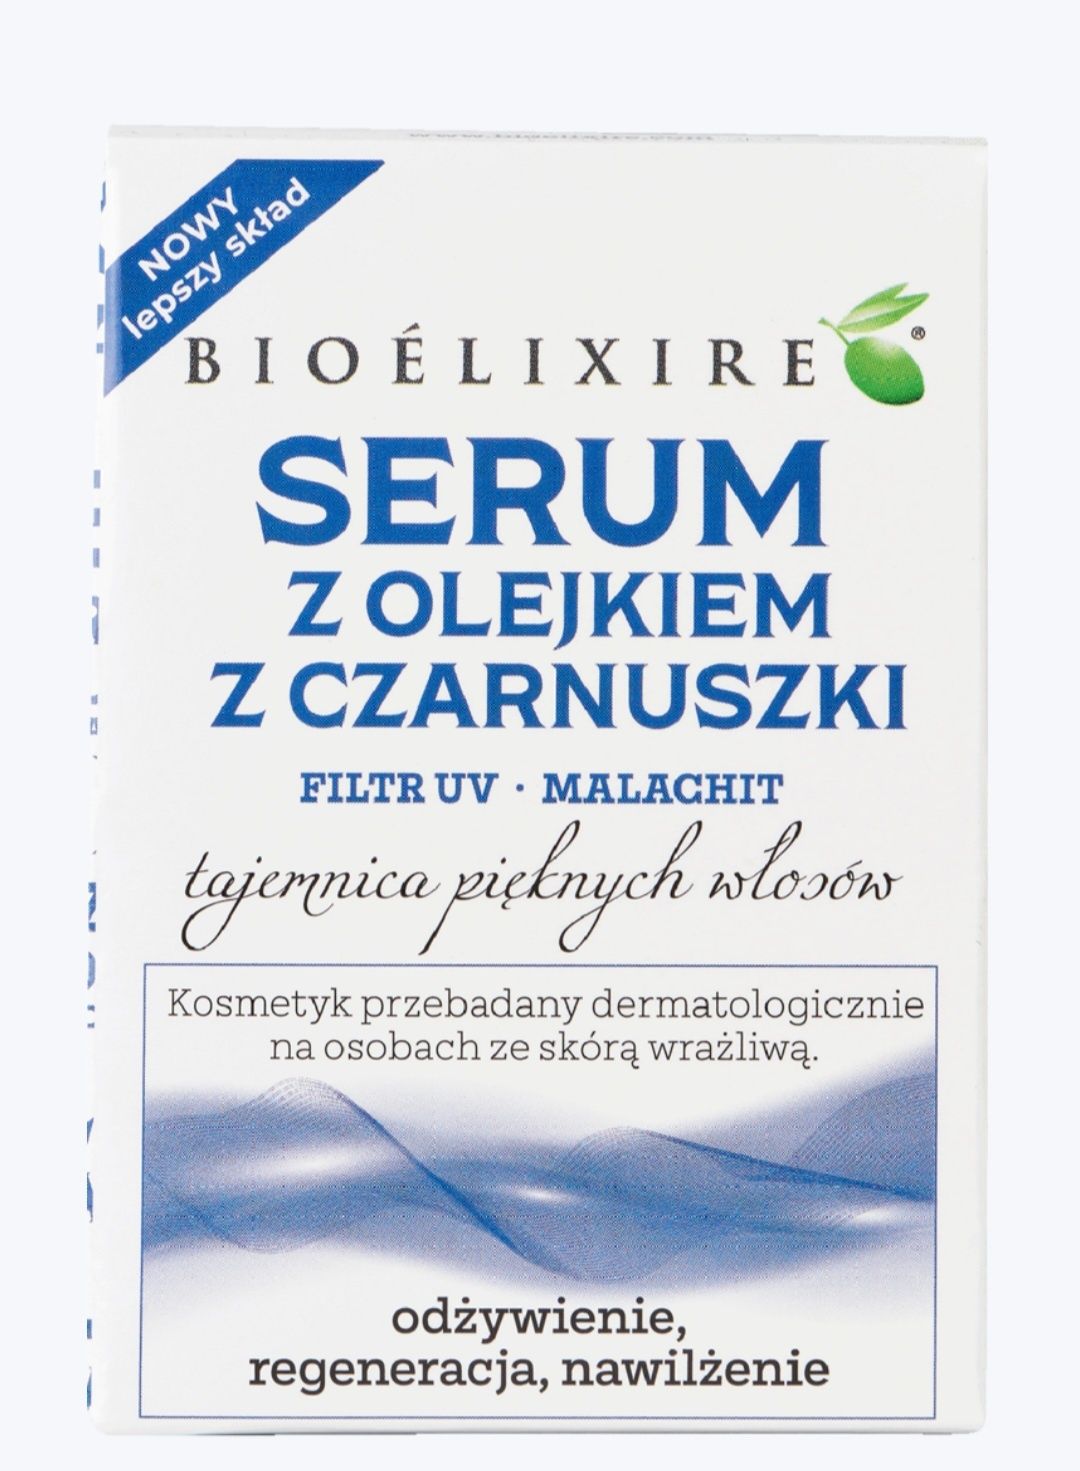 Bioelixire serumsilikon z olejkiem konopnym czarnuszki 20ml